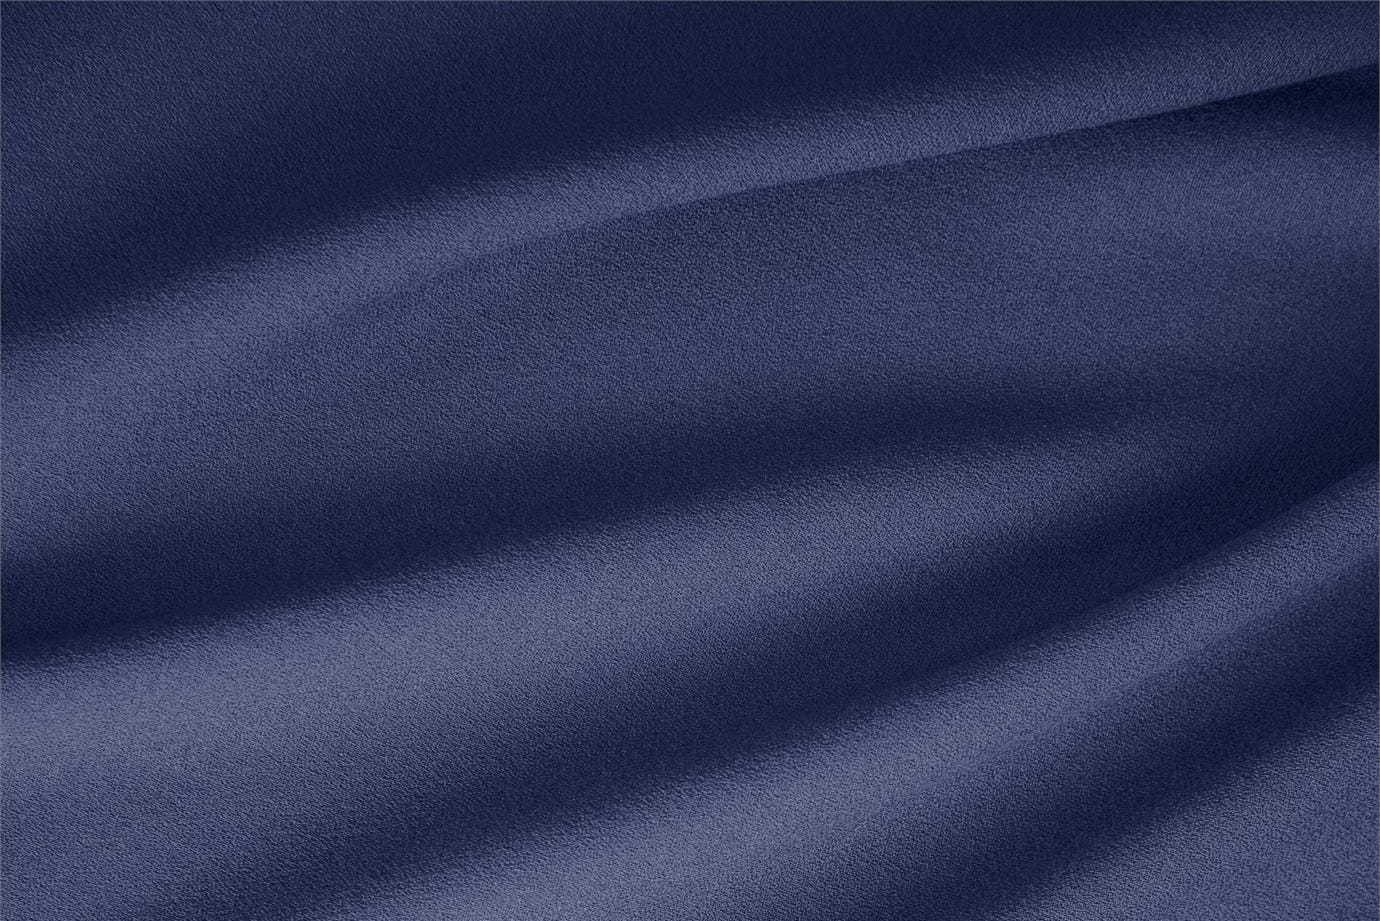 Tessuto Lana Stretch Blu Oceano in Lana, Poliestere, Stretch per abbigliamento